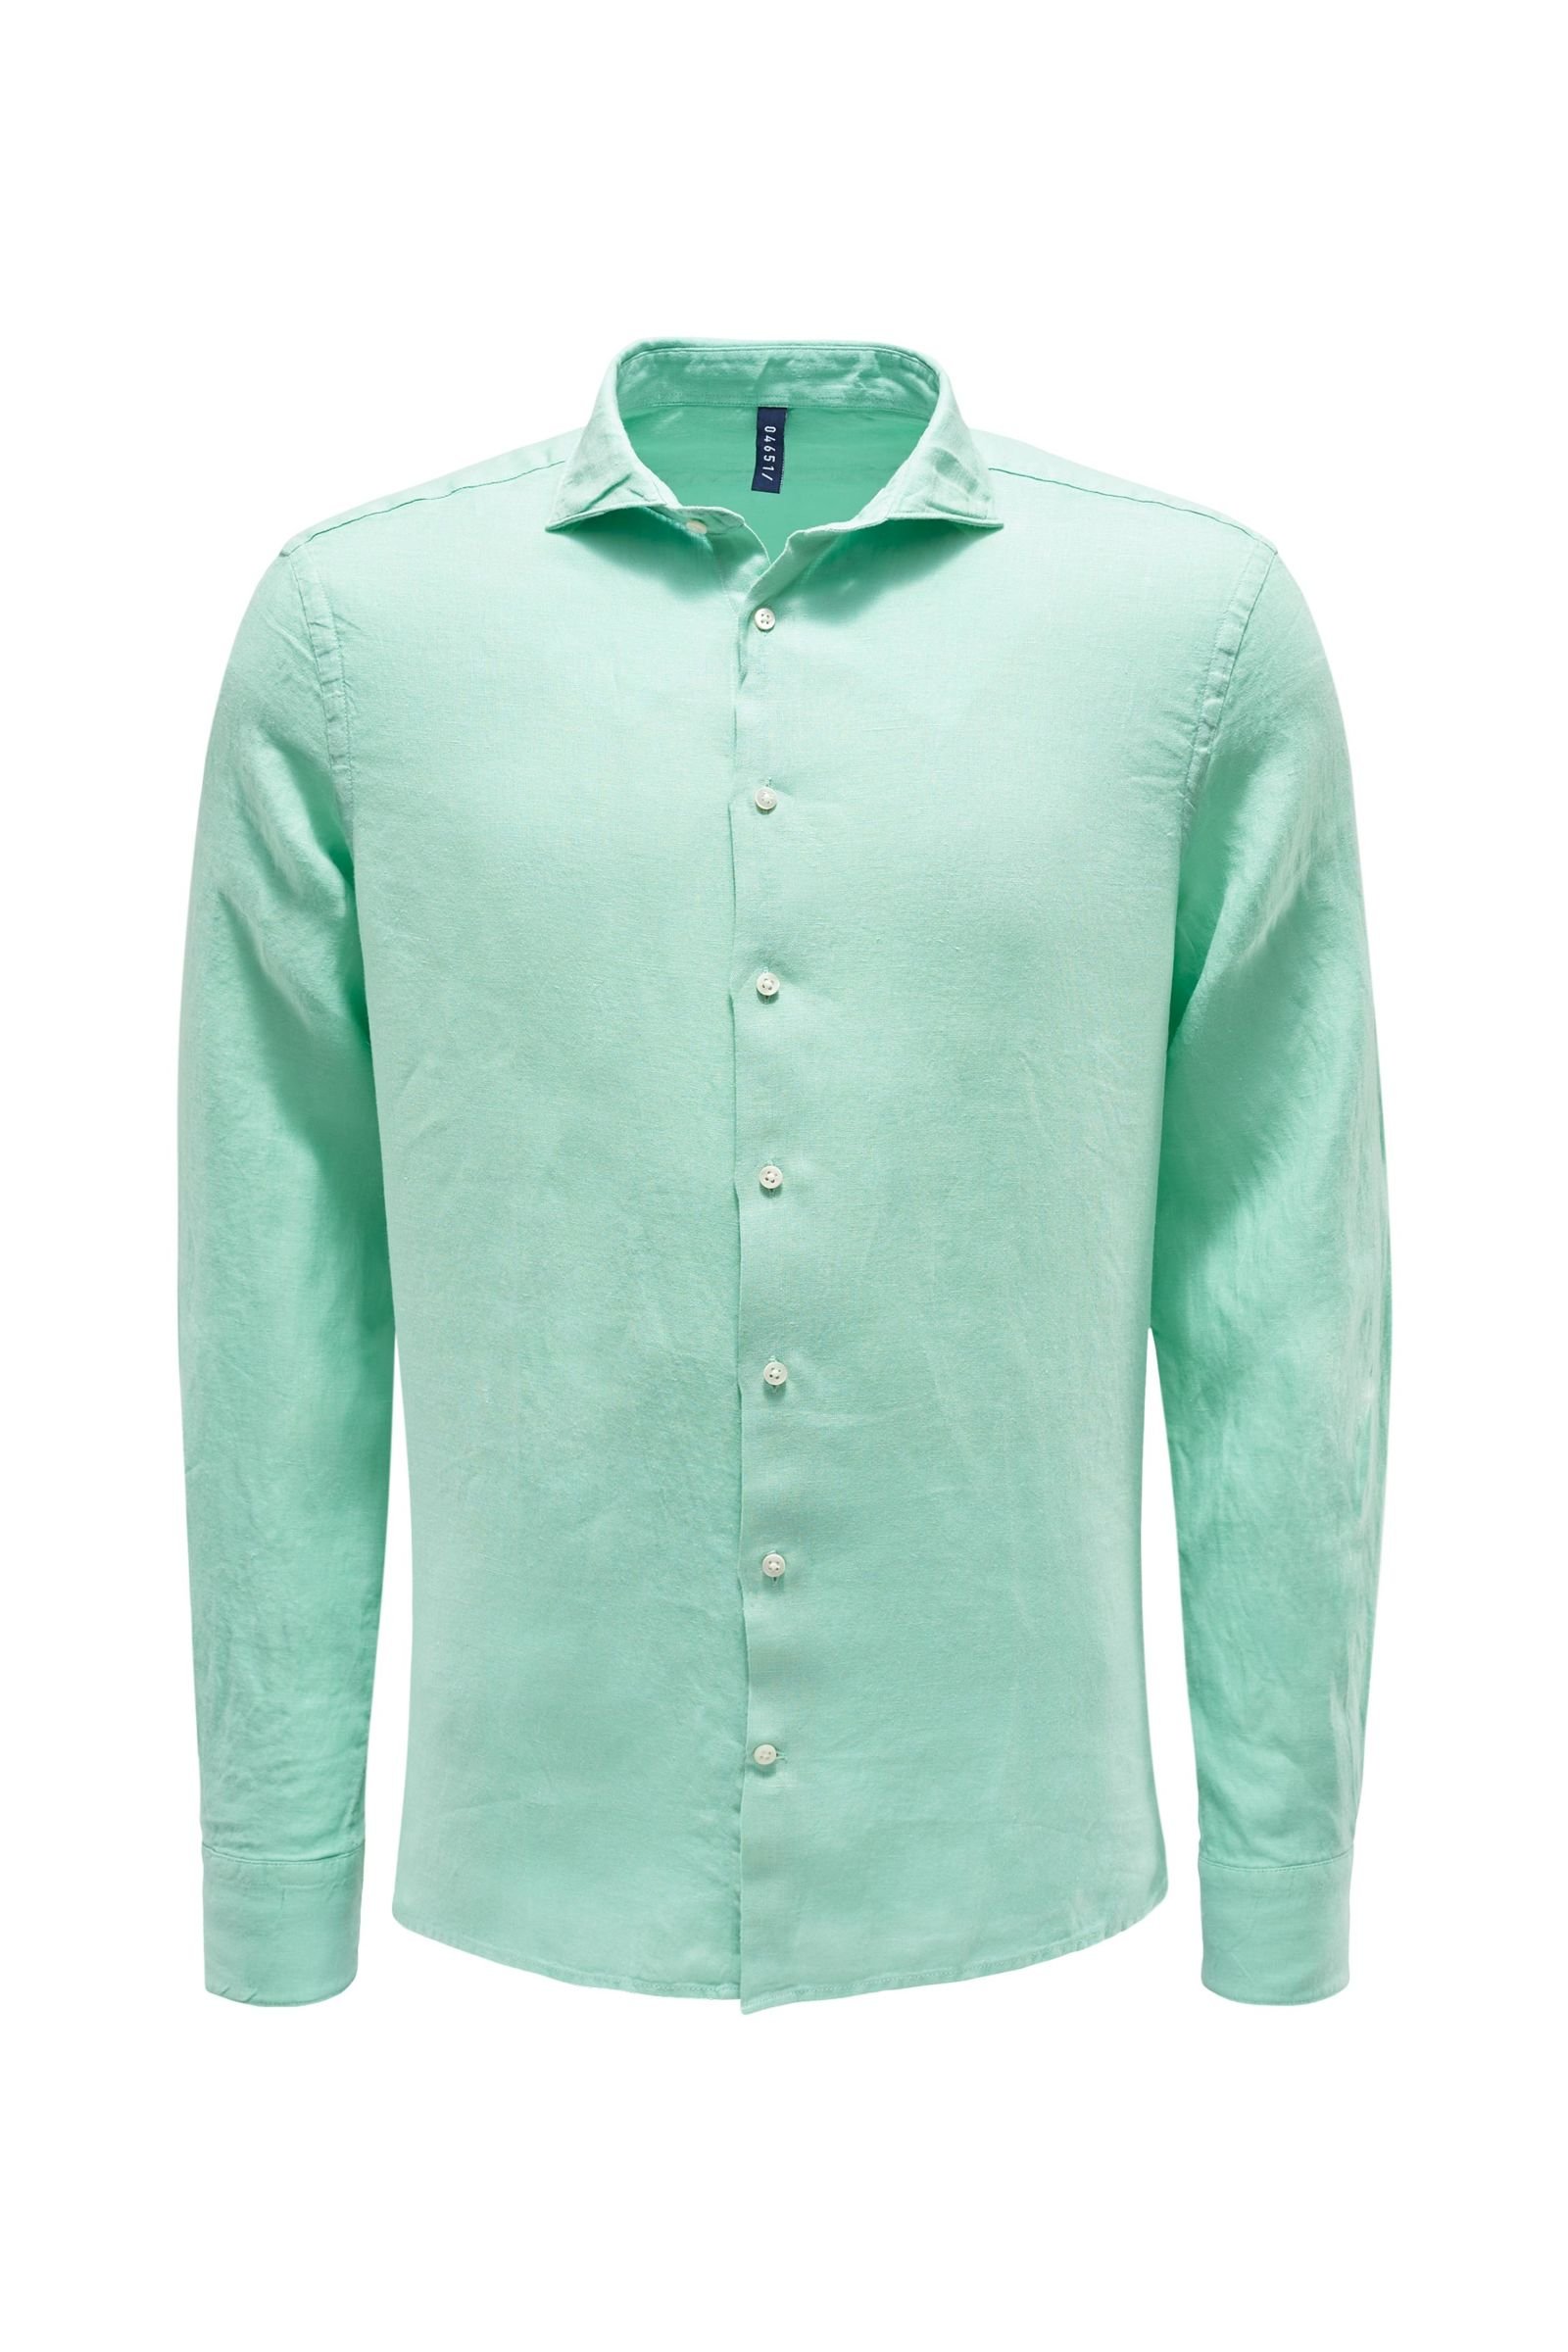 Linen shirt shark collar mint green